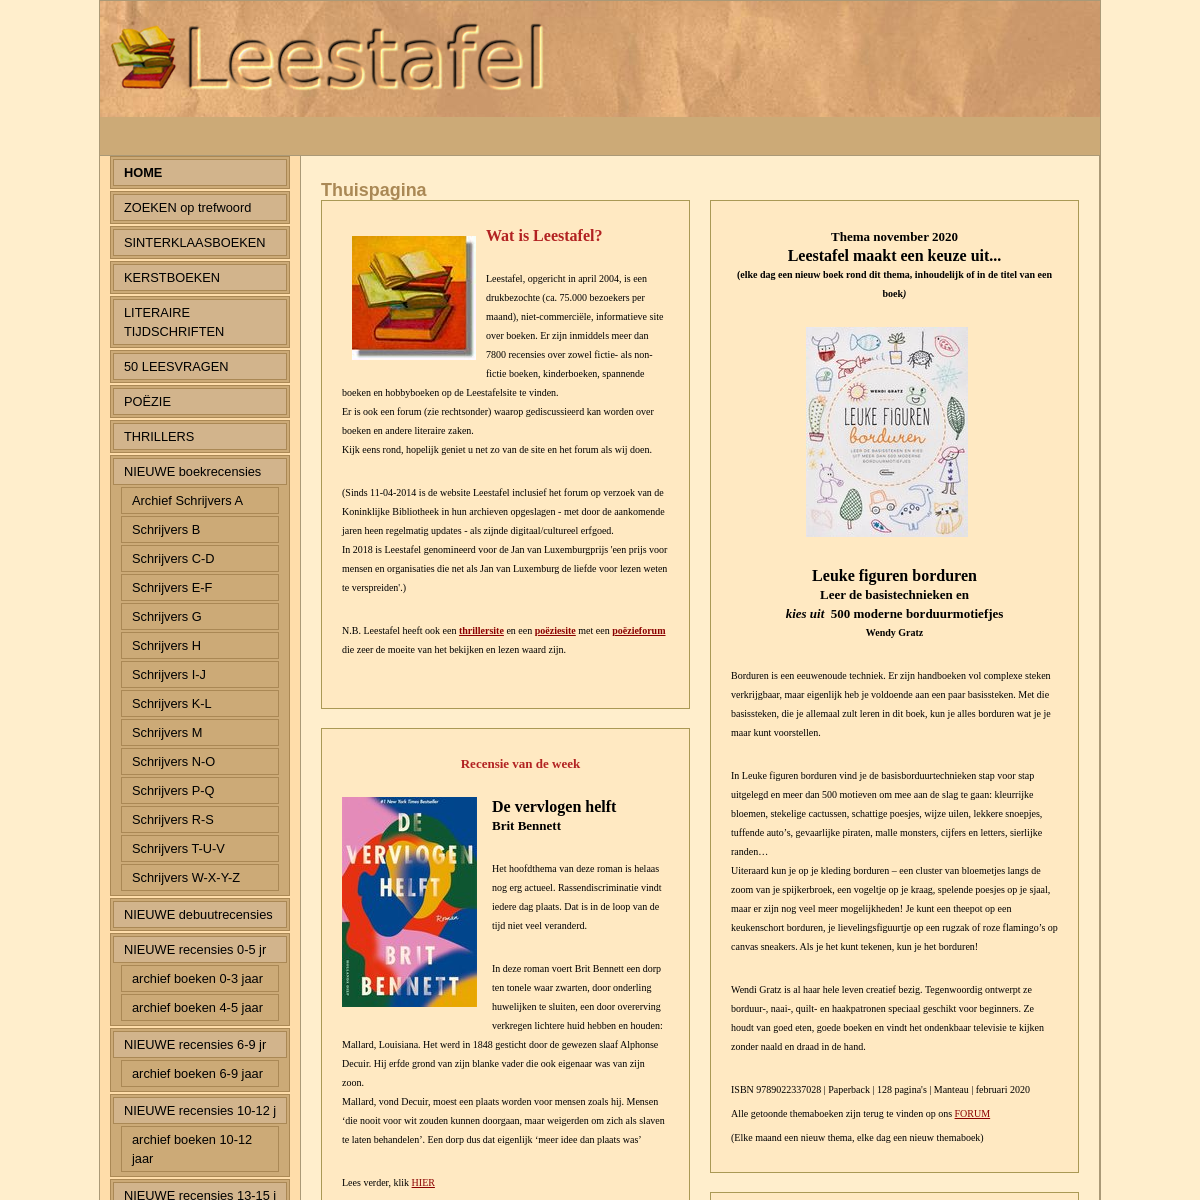 A complete backup of leestafel.info